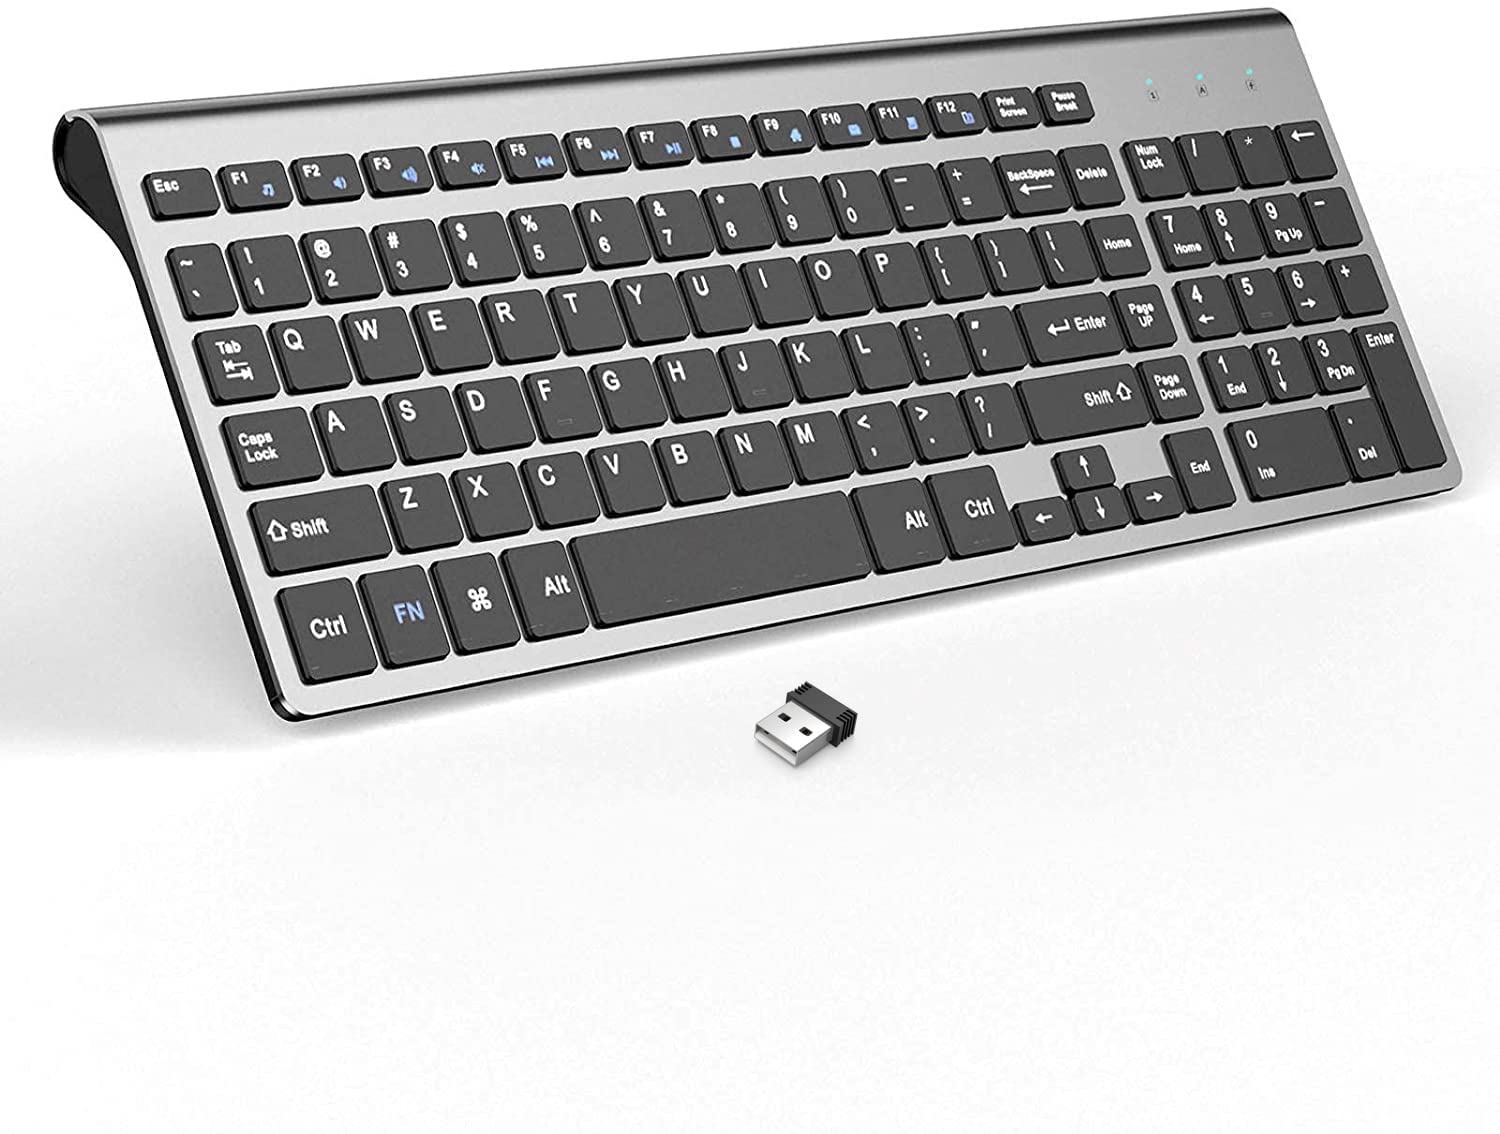 The Best Wireless Keyboard | May 2022